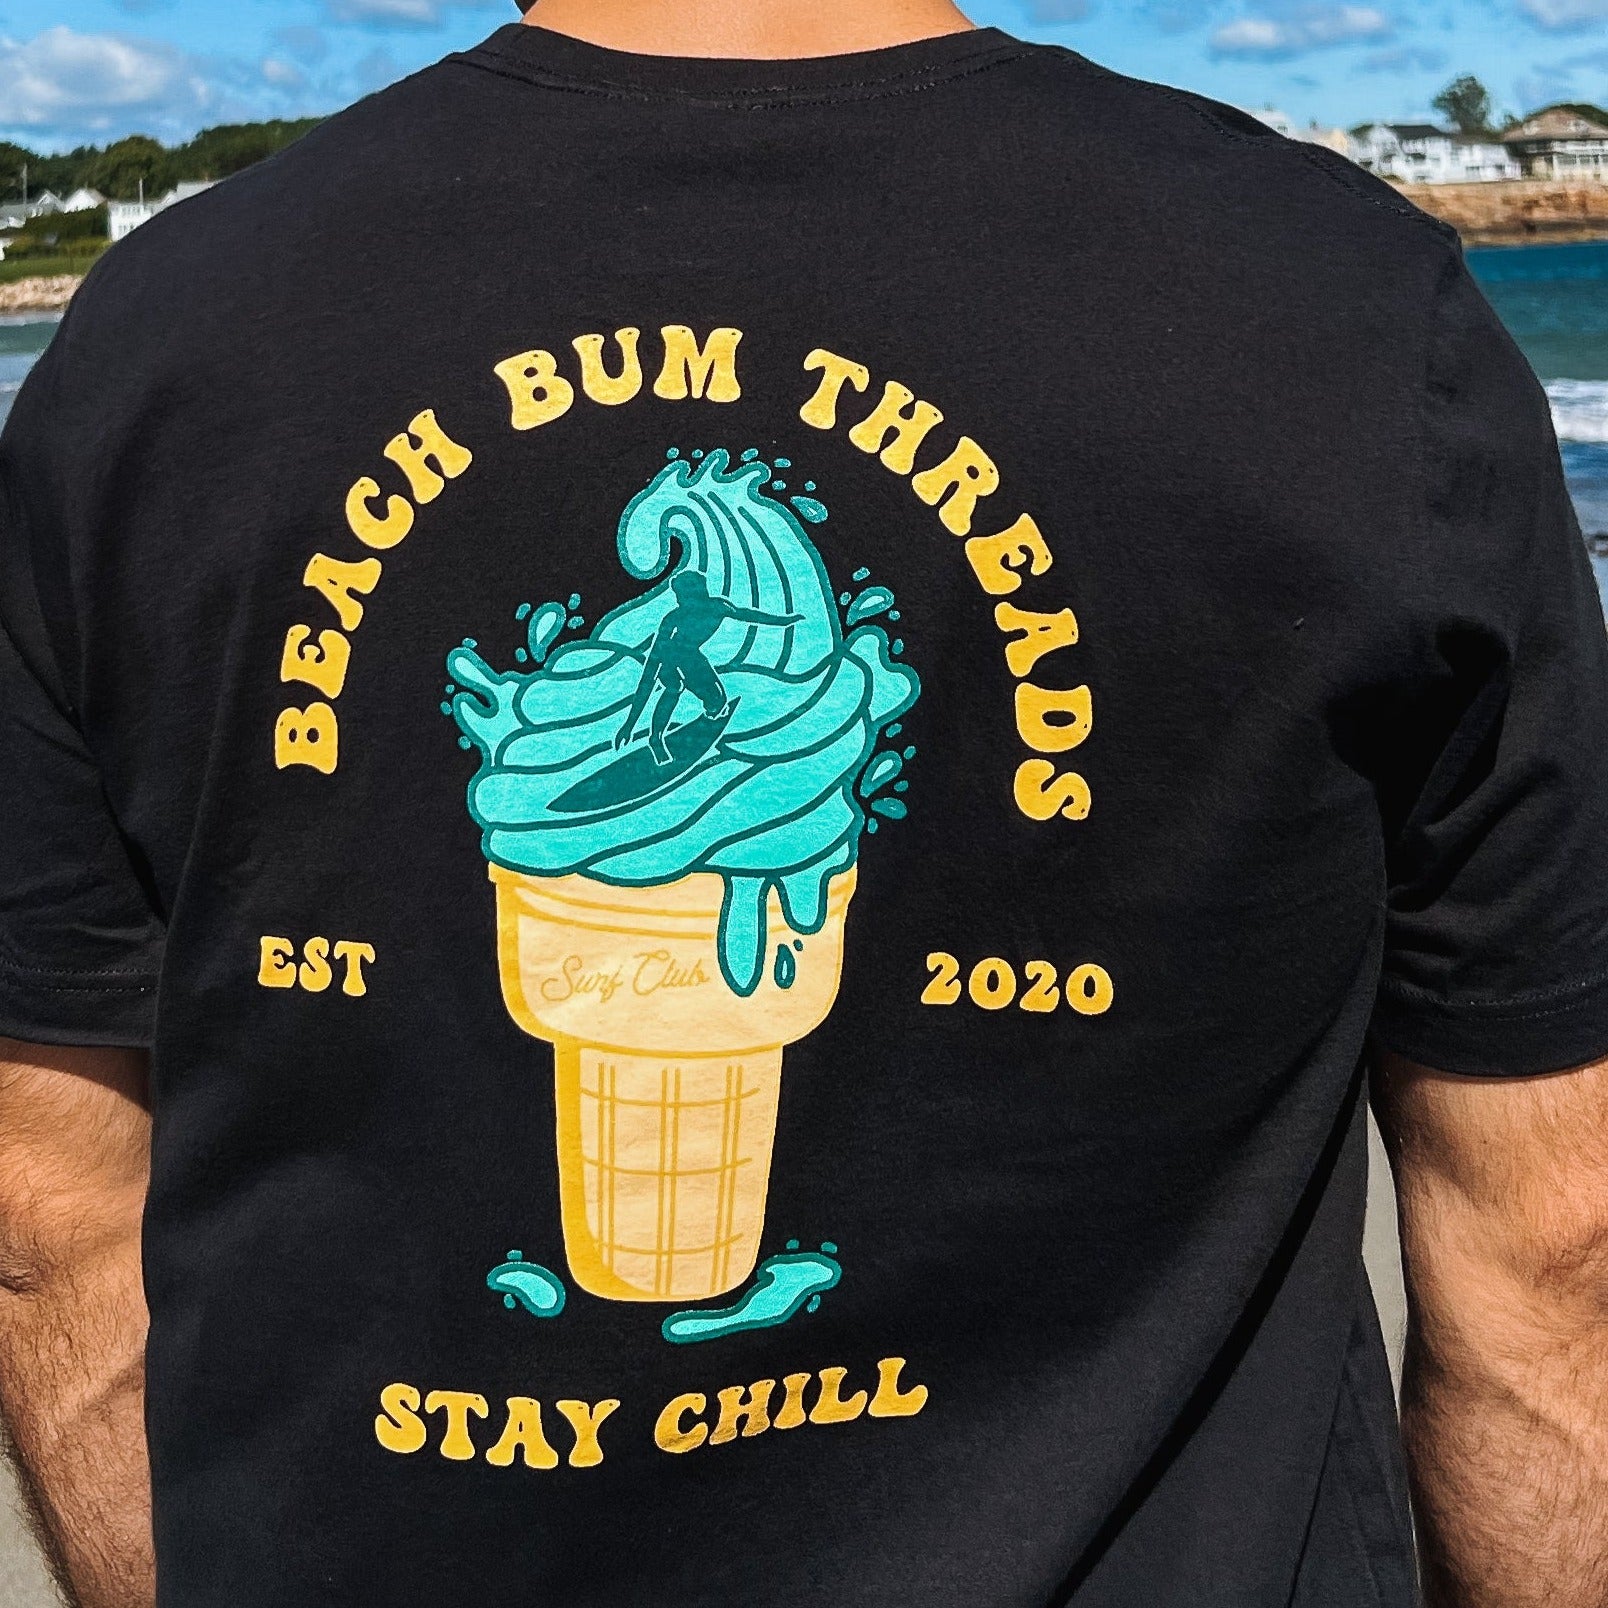 Stay Chill ~ Tee Beach Bum Threads Surf Club